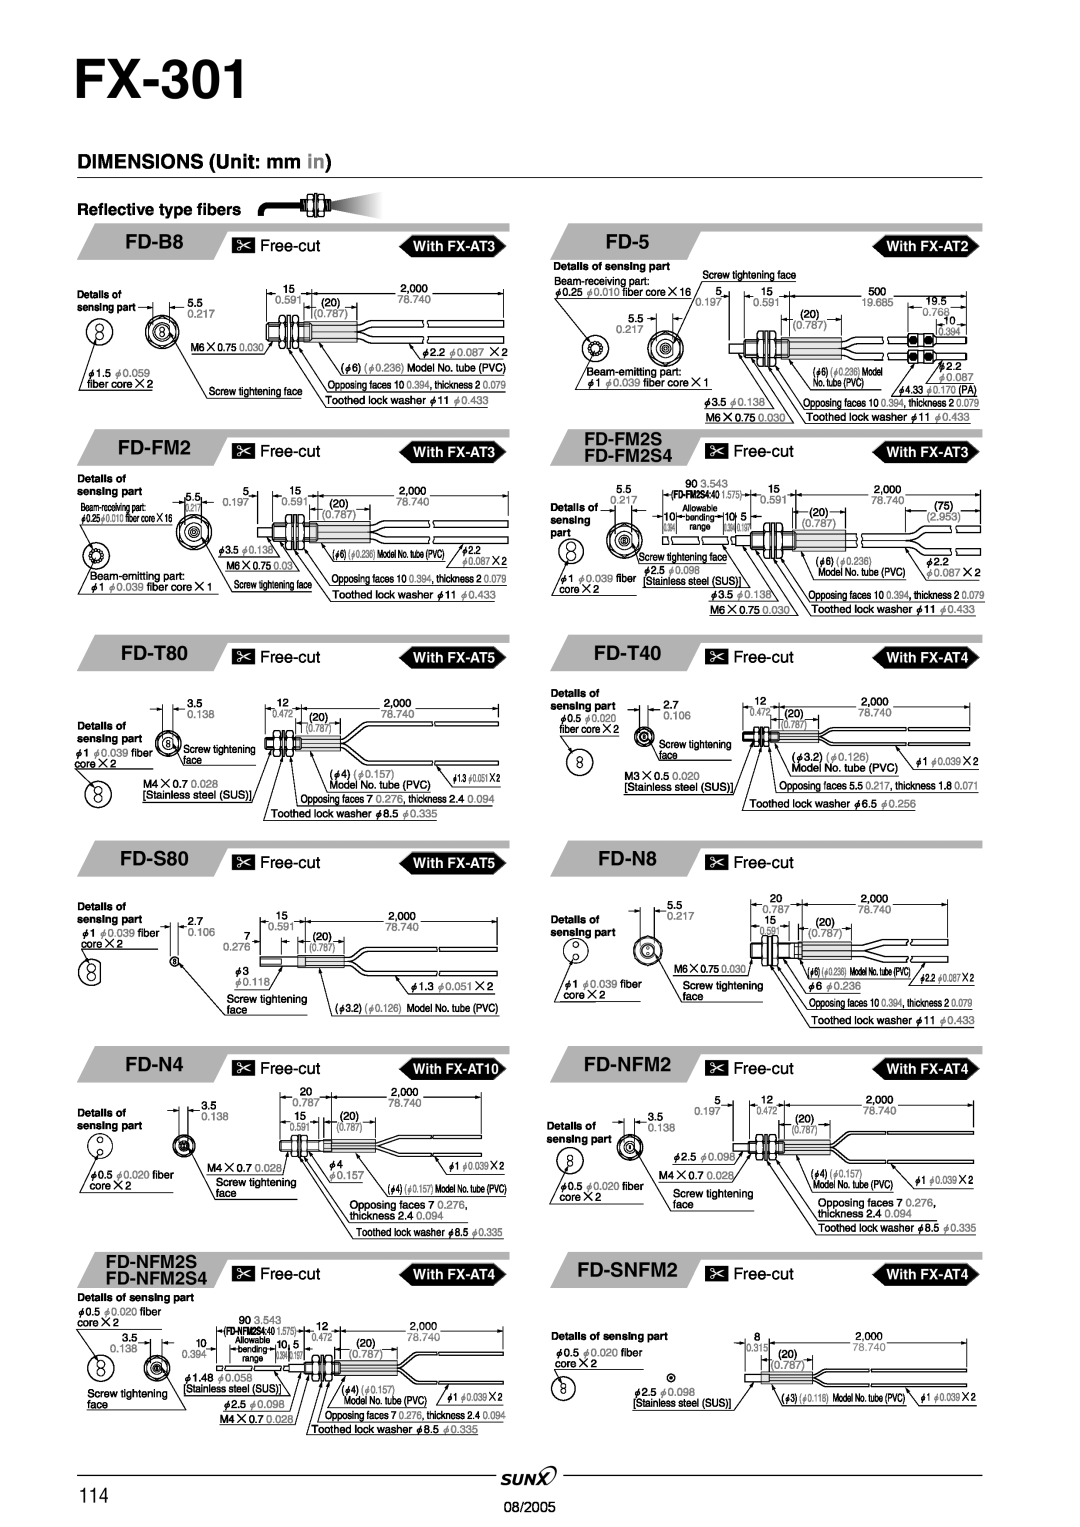 Panasonic FX-301 manual FD-FM2, FD-T80, FD-S80, FD-5, FD-T40, FD-NFM2, FD-SNFM2, DIMENSIONS Unit mm in, FD-B8, FD-N4, FD-N8 